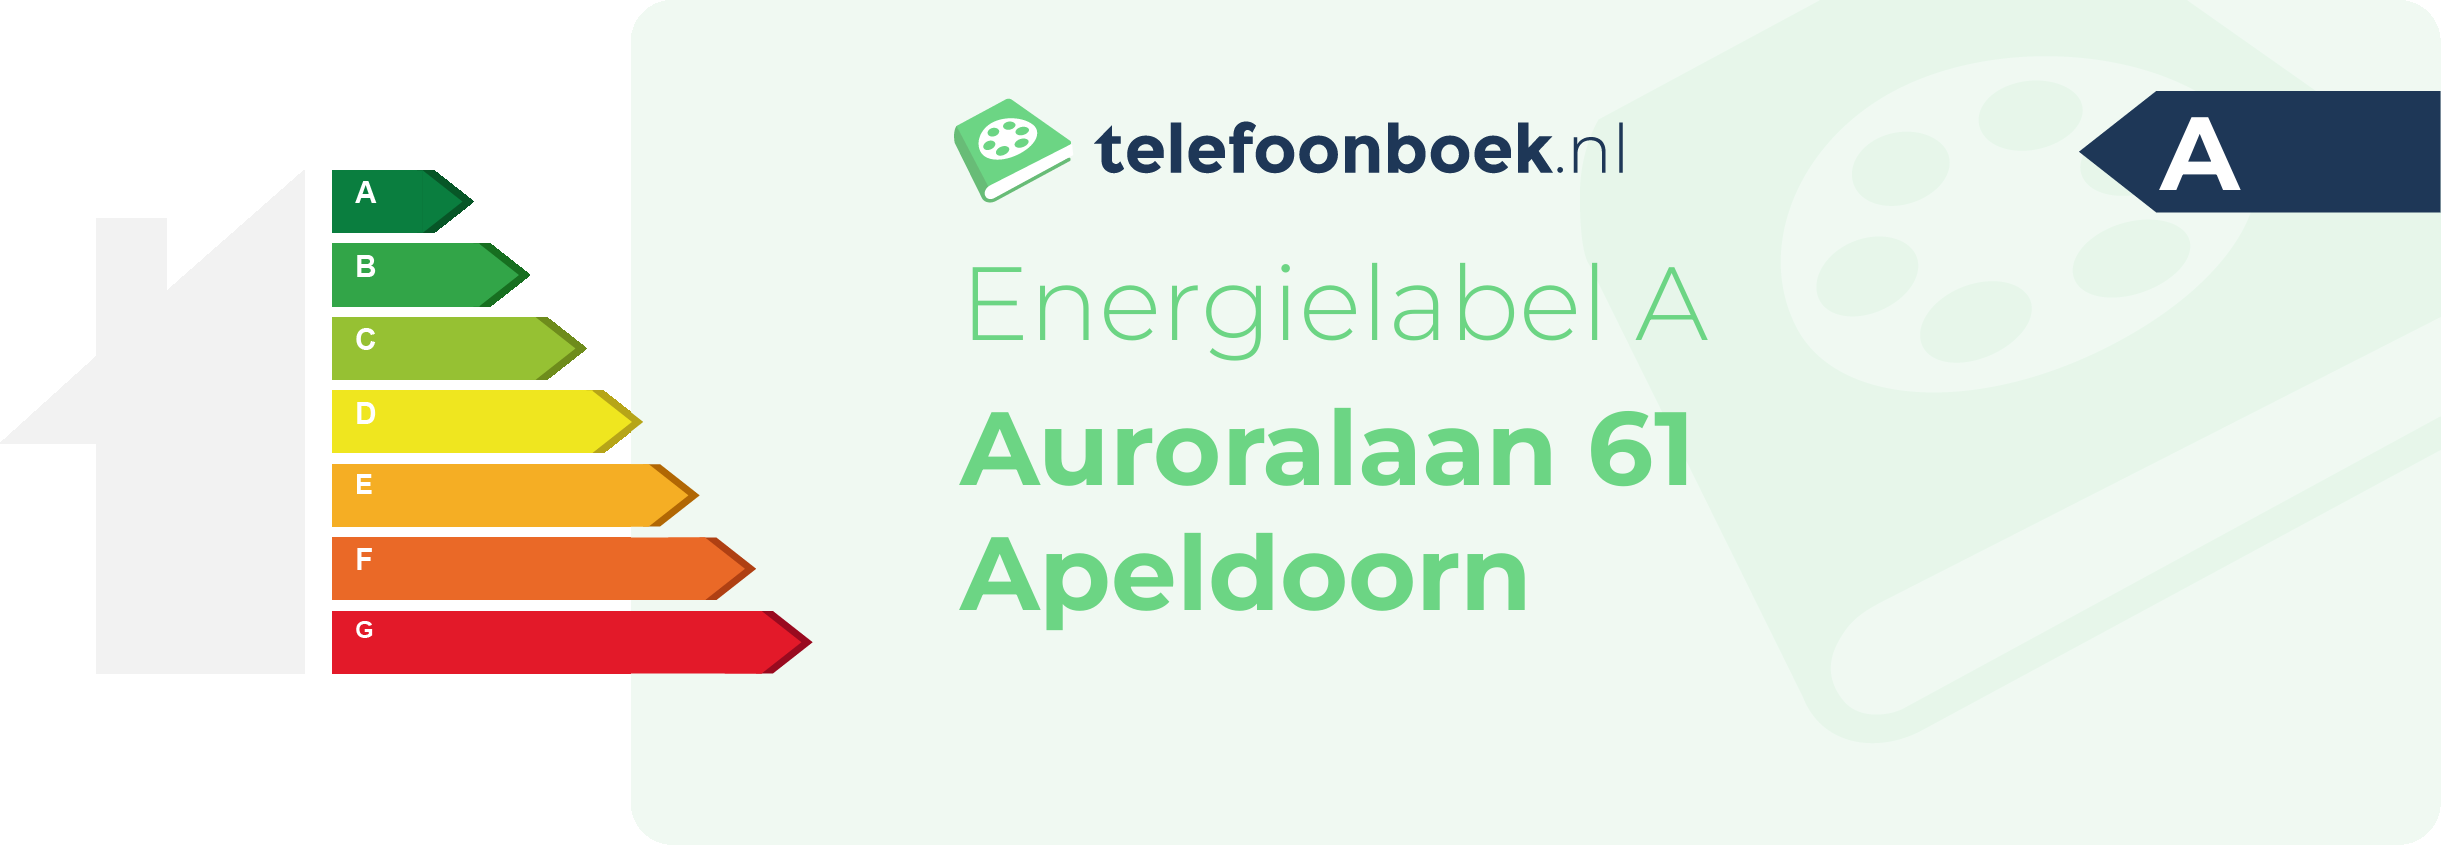 Energielabel Auroralaan 61 Apeldoorn